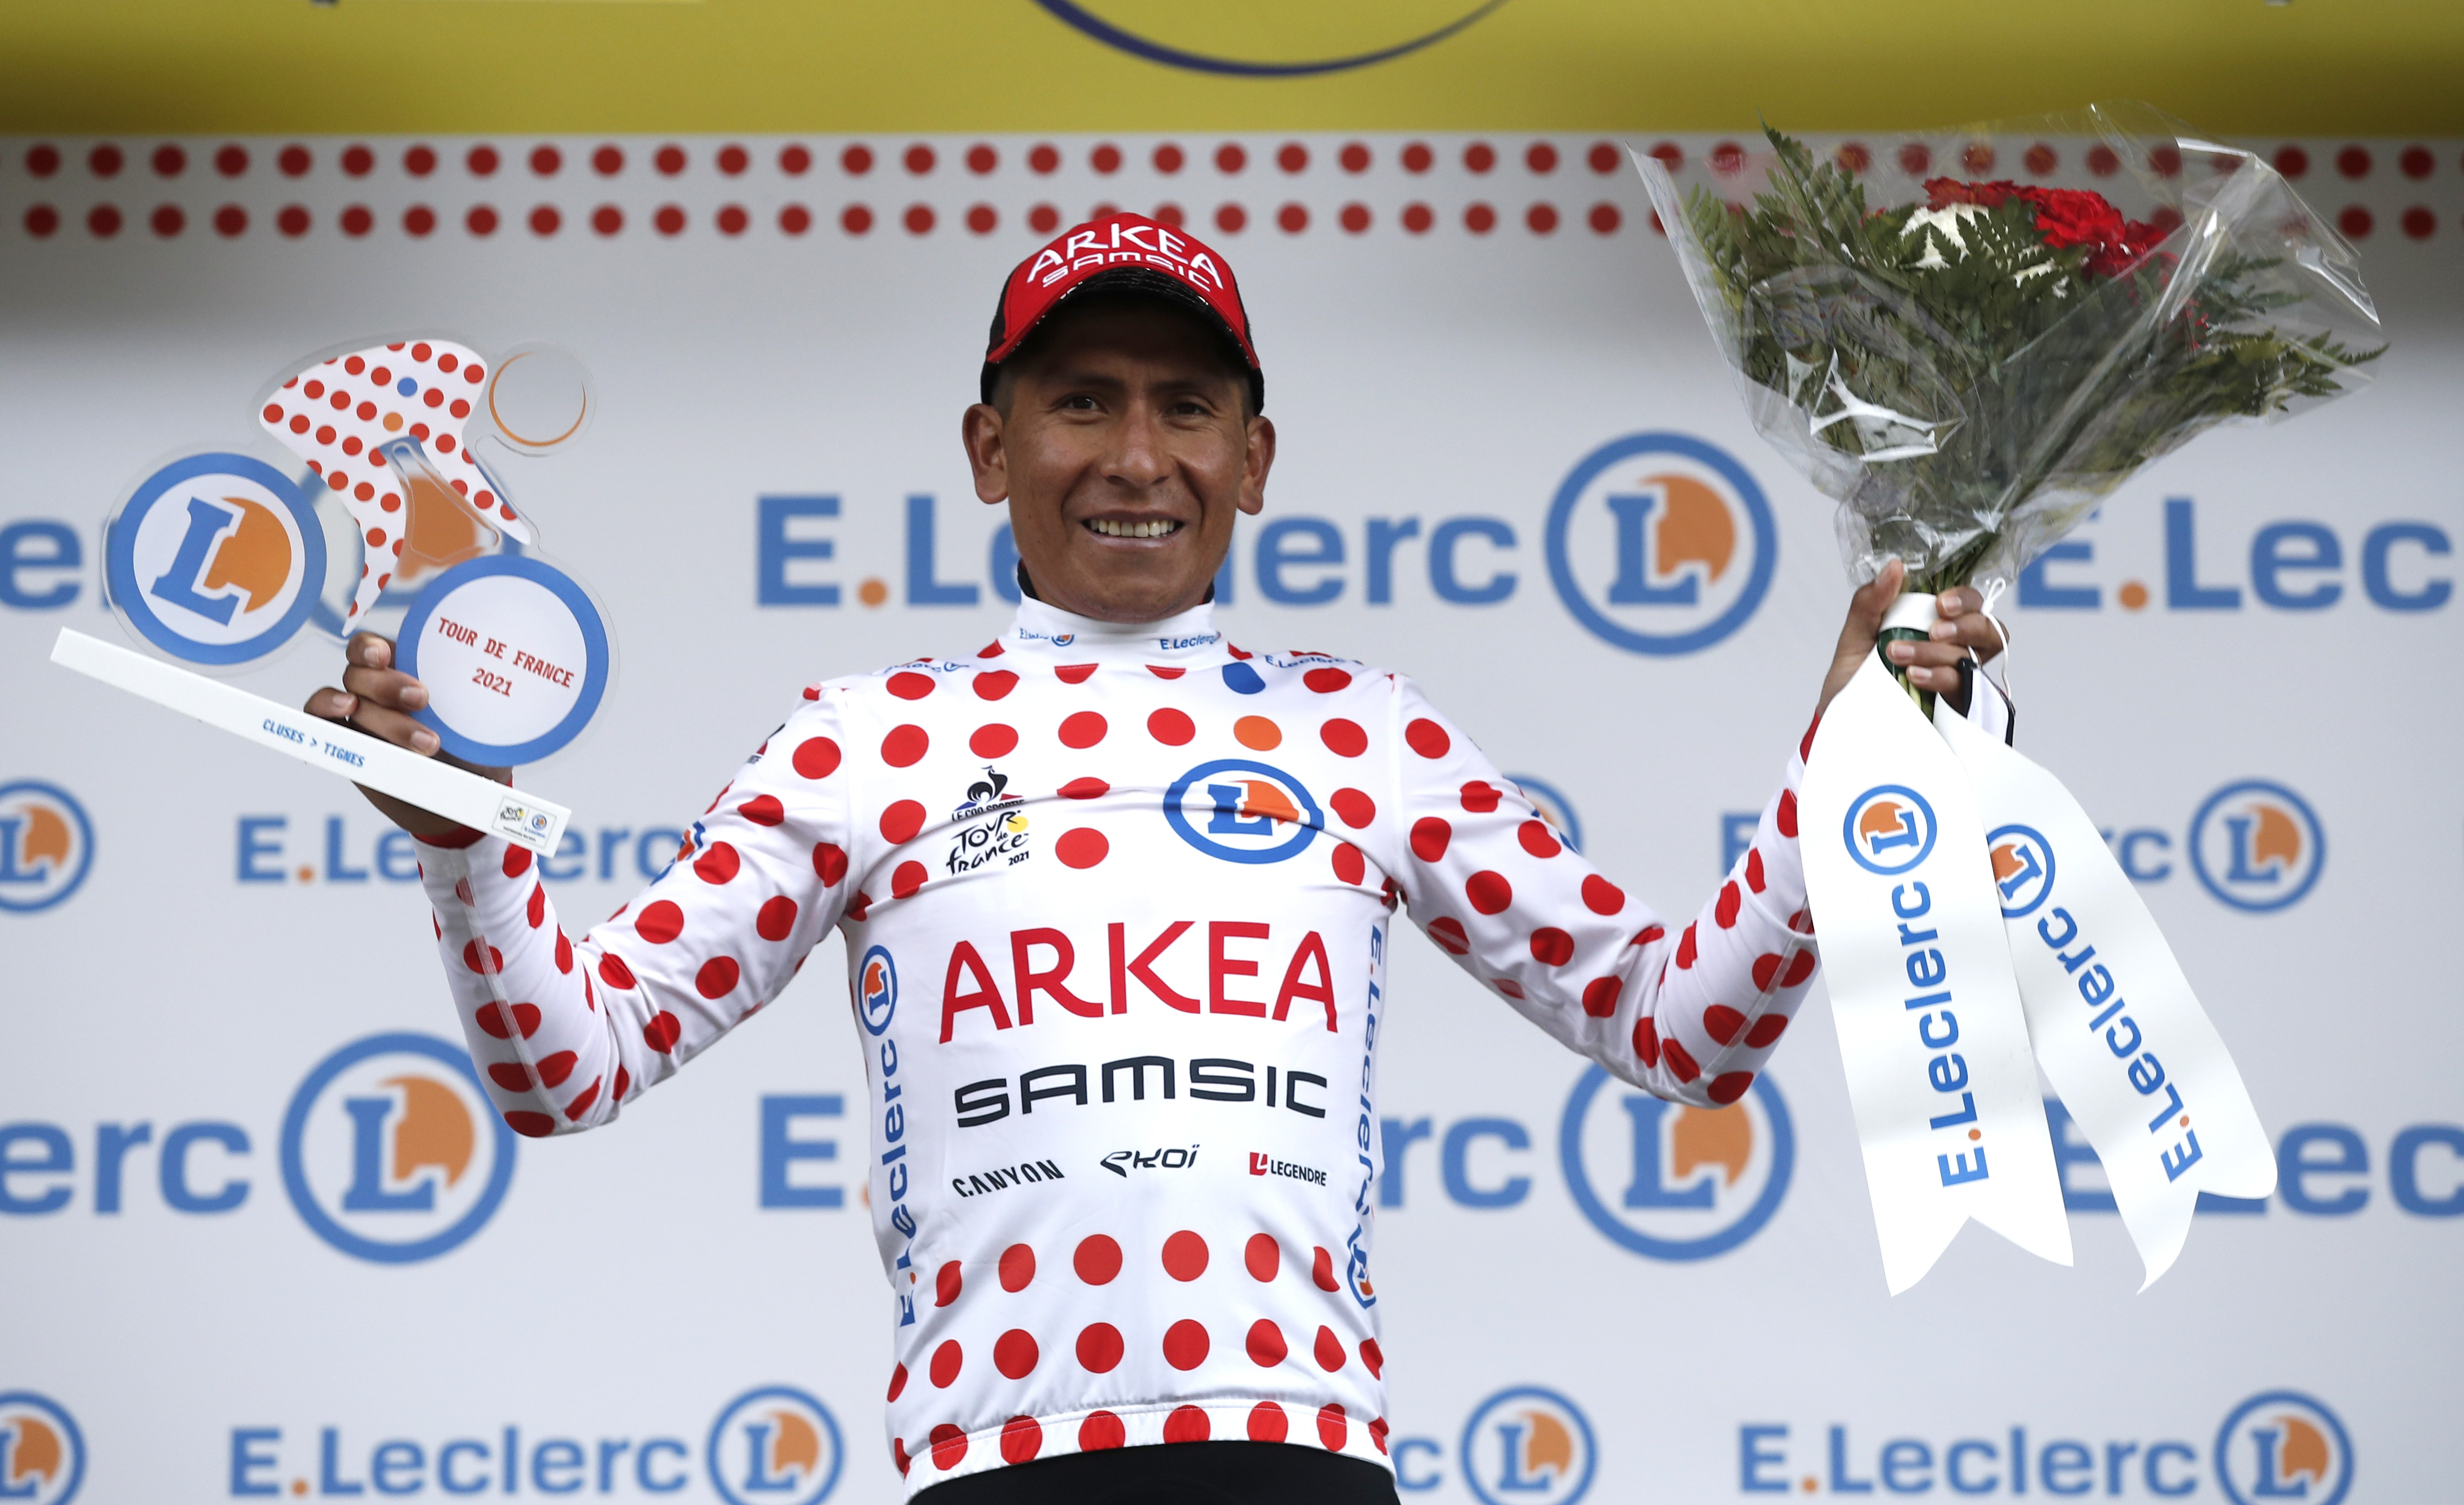 periscopio Alinear Matón Hemos trabajado por este maillot”, Nairo Quintana tras ponerse como líder  de montaña en el Tour de Francia - Infobae